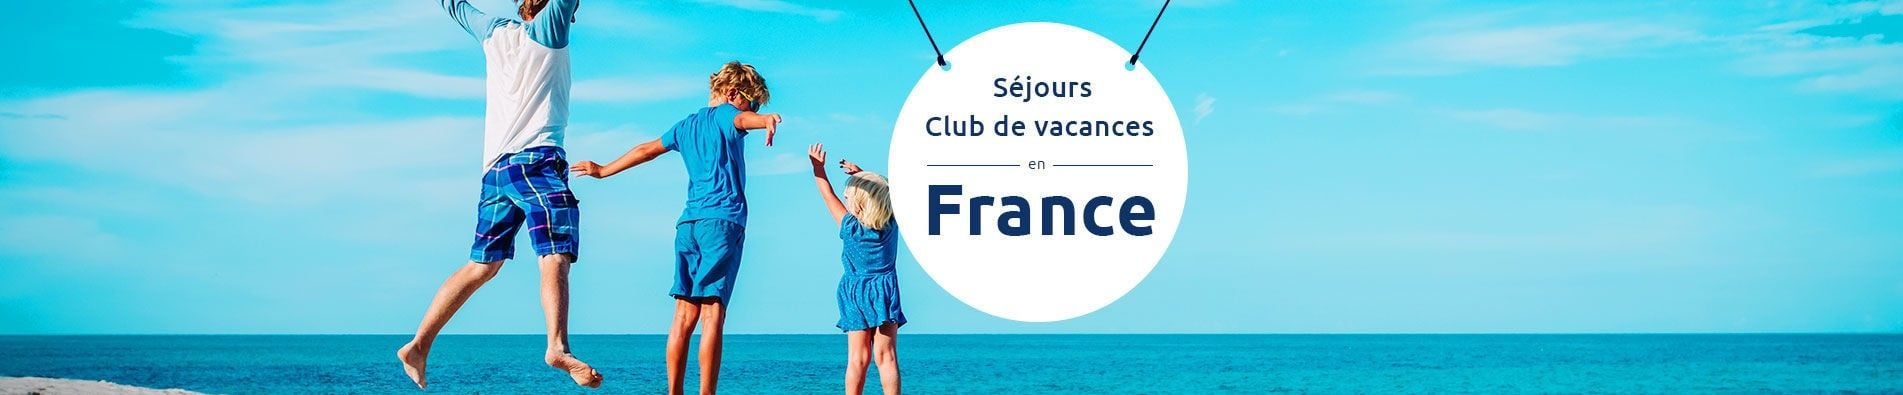 Séjours club vacances en France